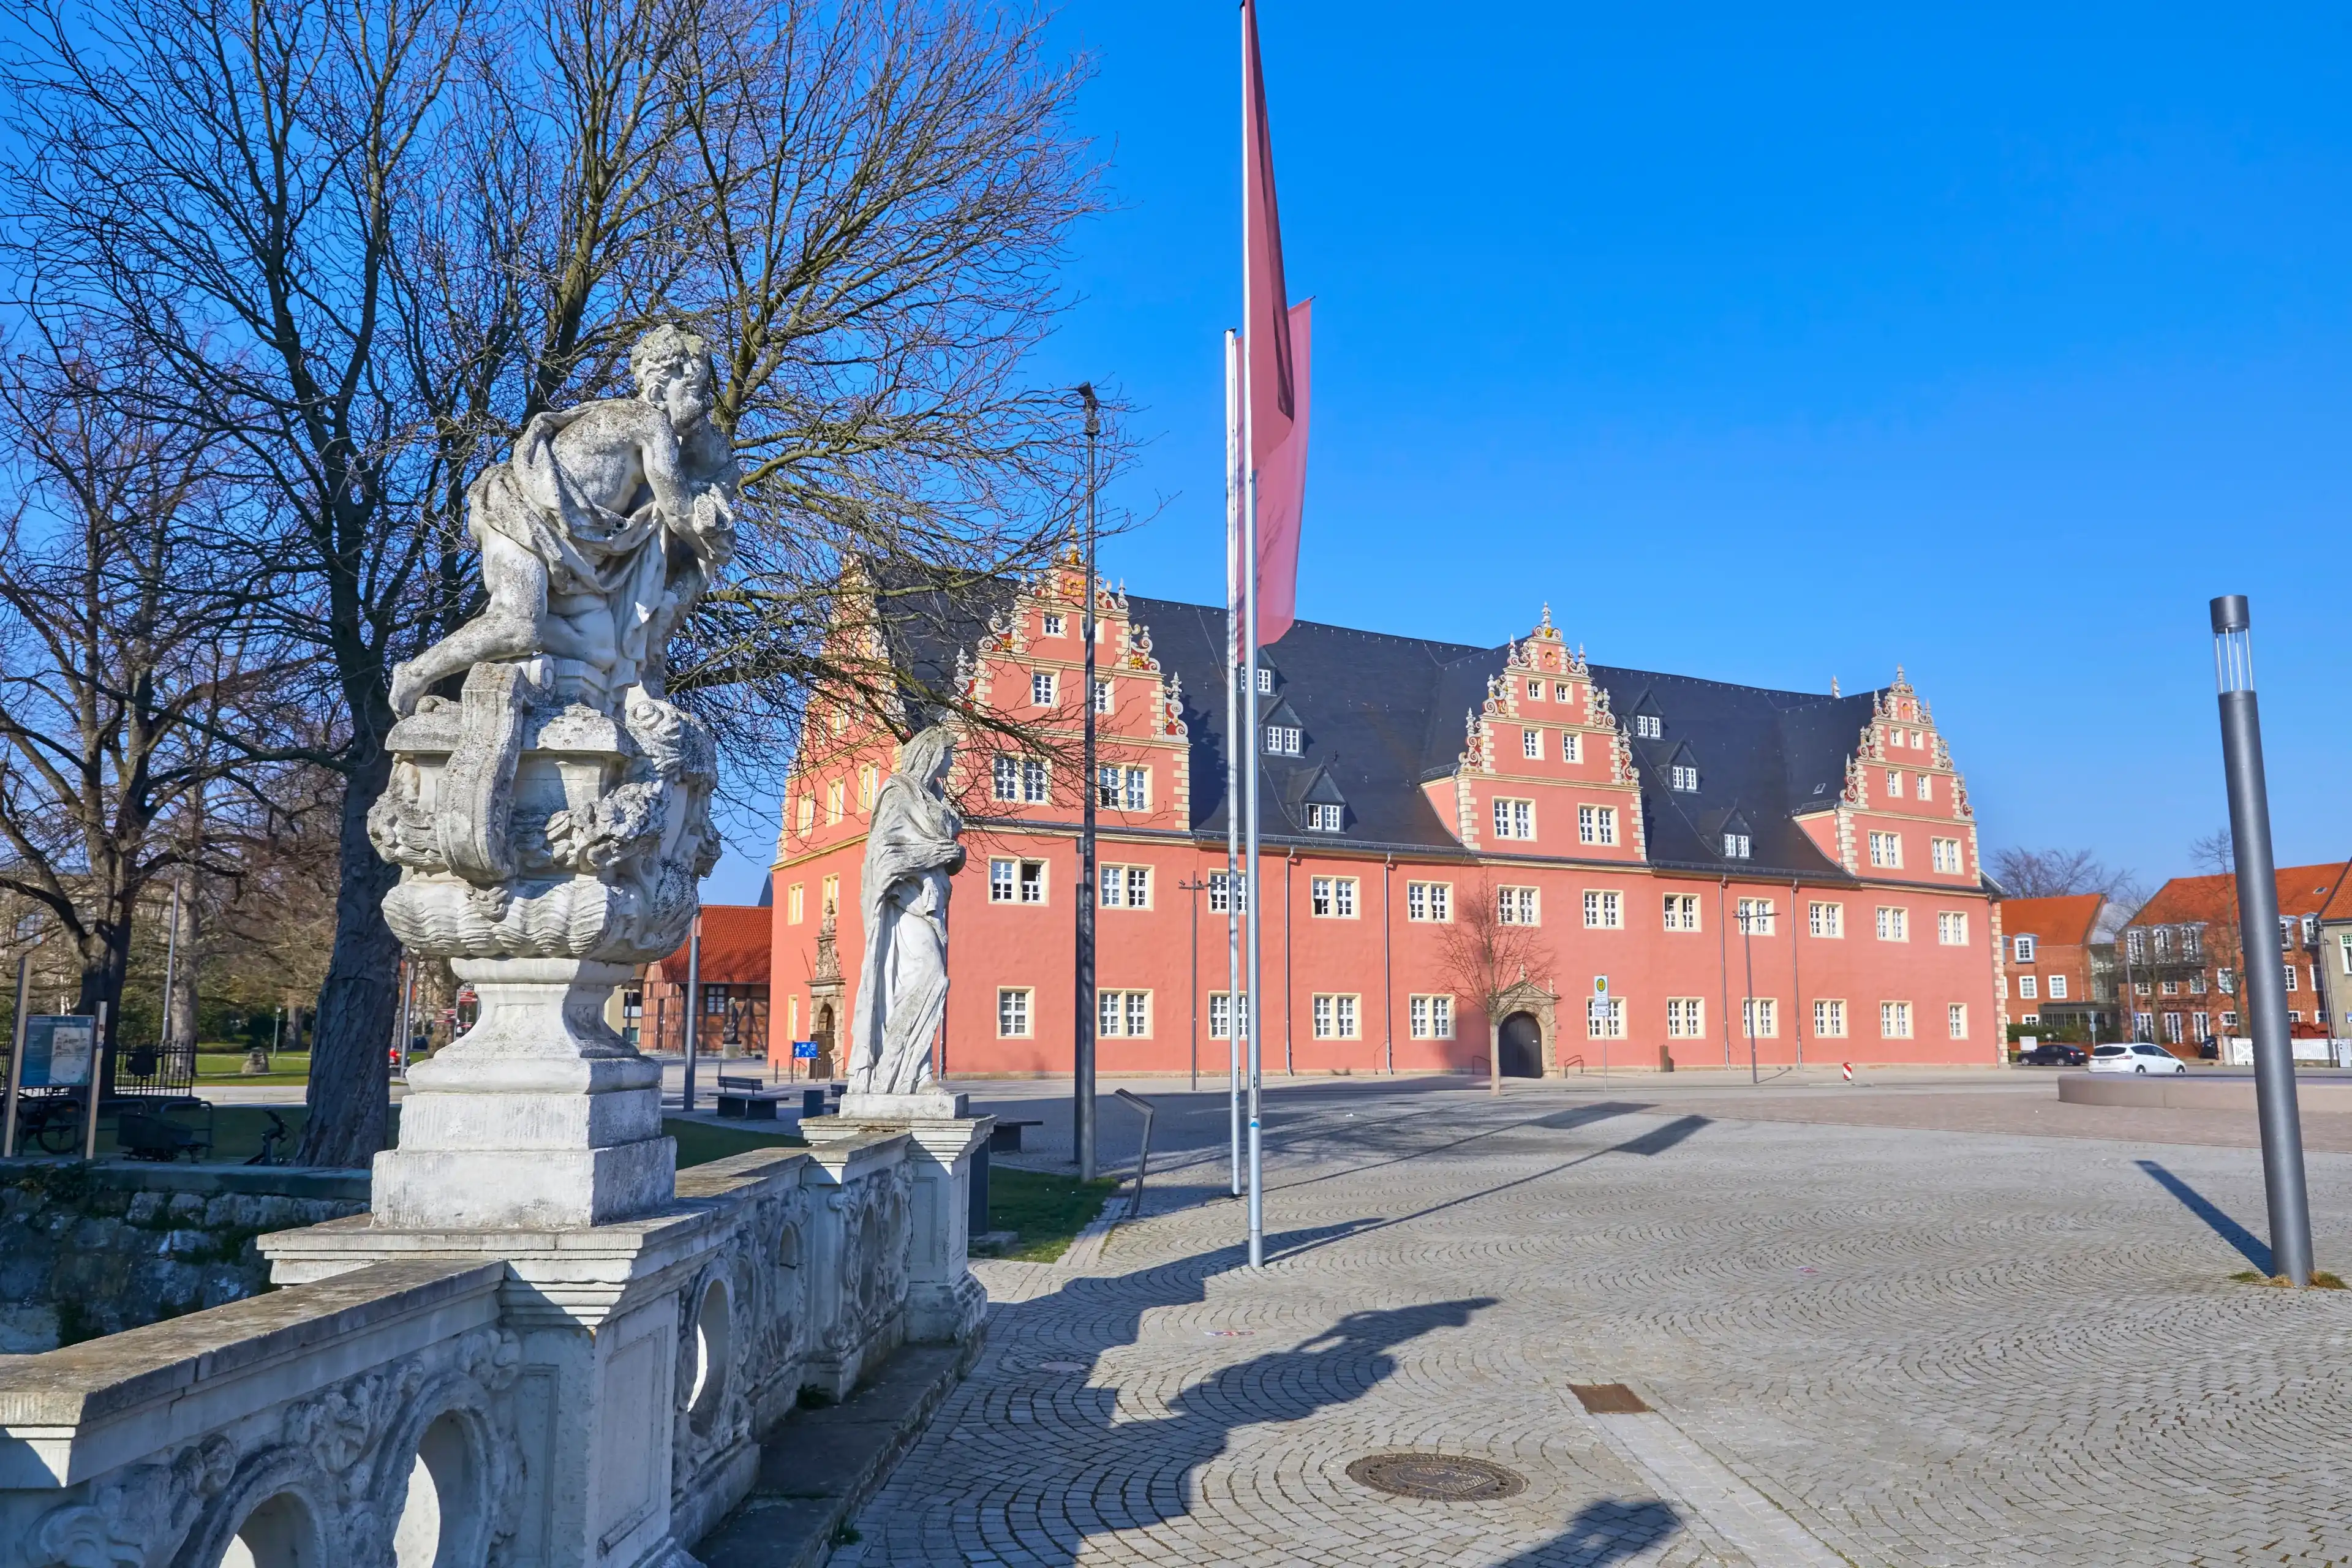 Best Wolfenbüttel hotels. Cheap hotels in Wolfenbüttel, Germany